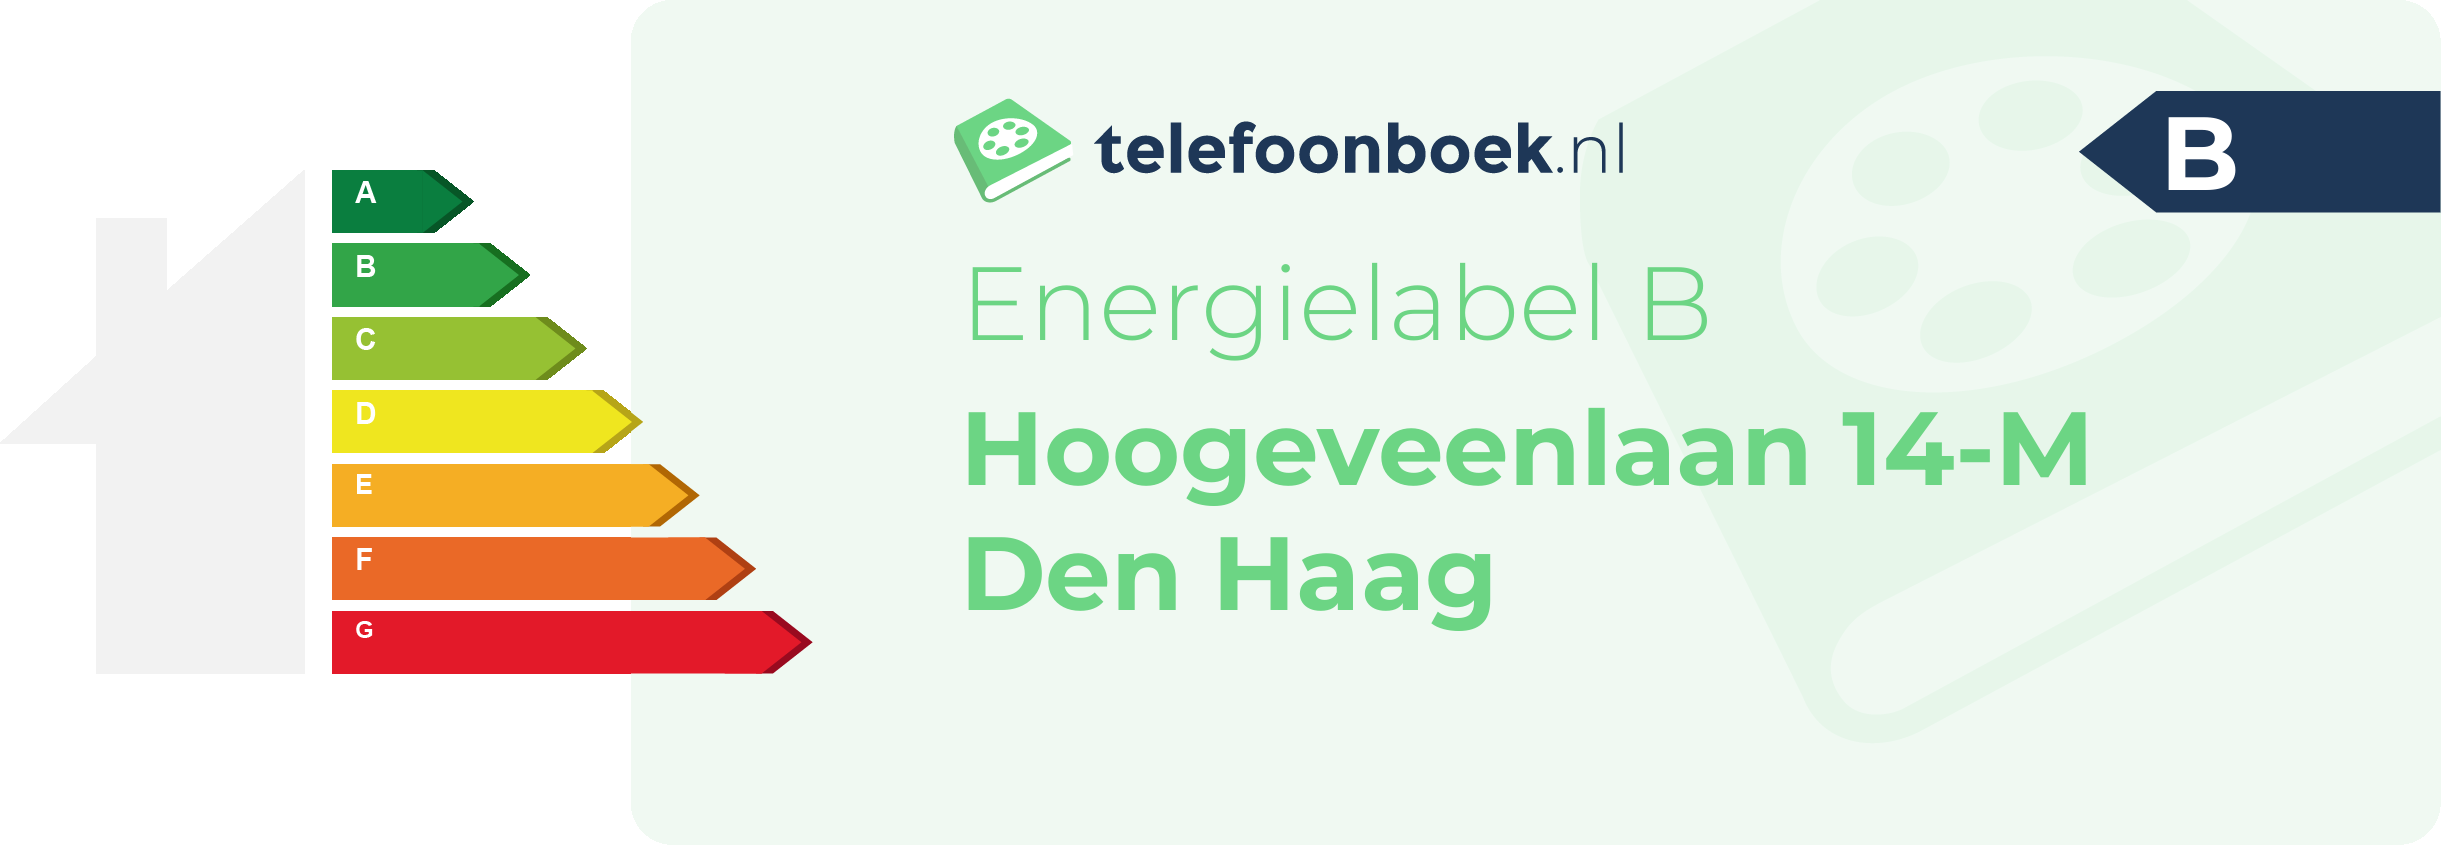 Energielabel Hoogeveenlaan 14-M Den Haag